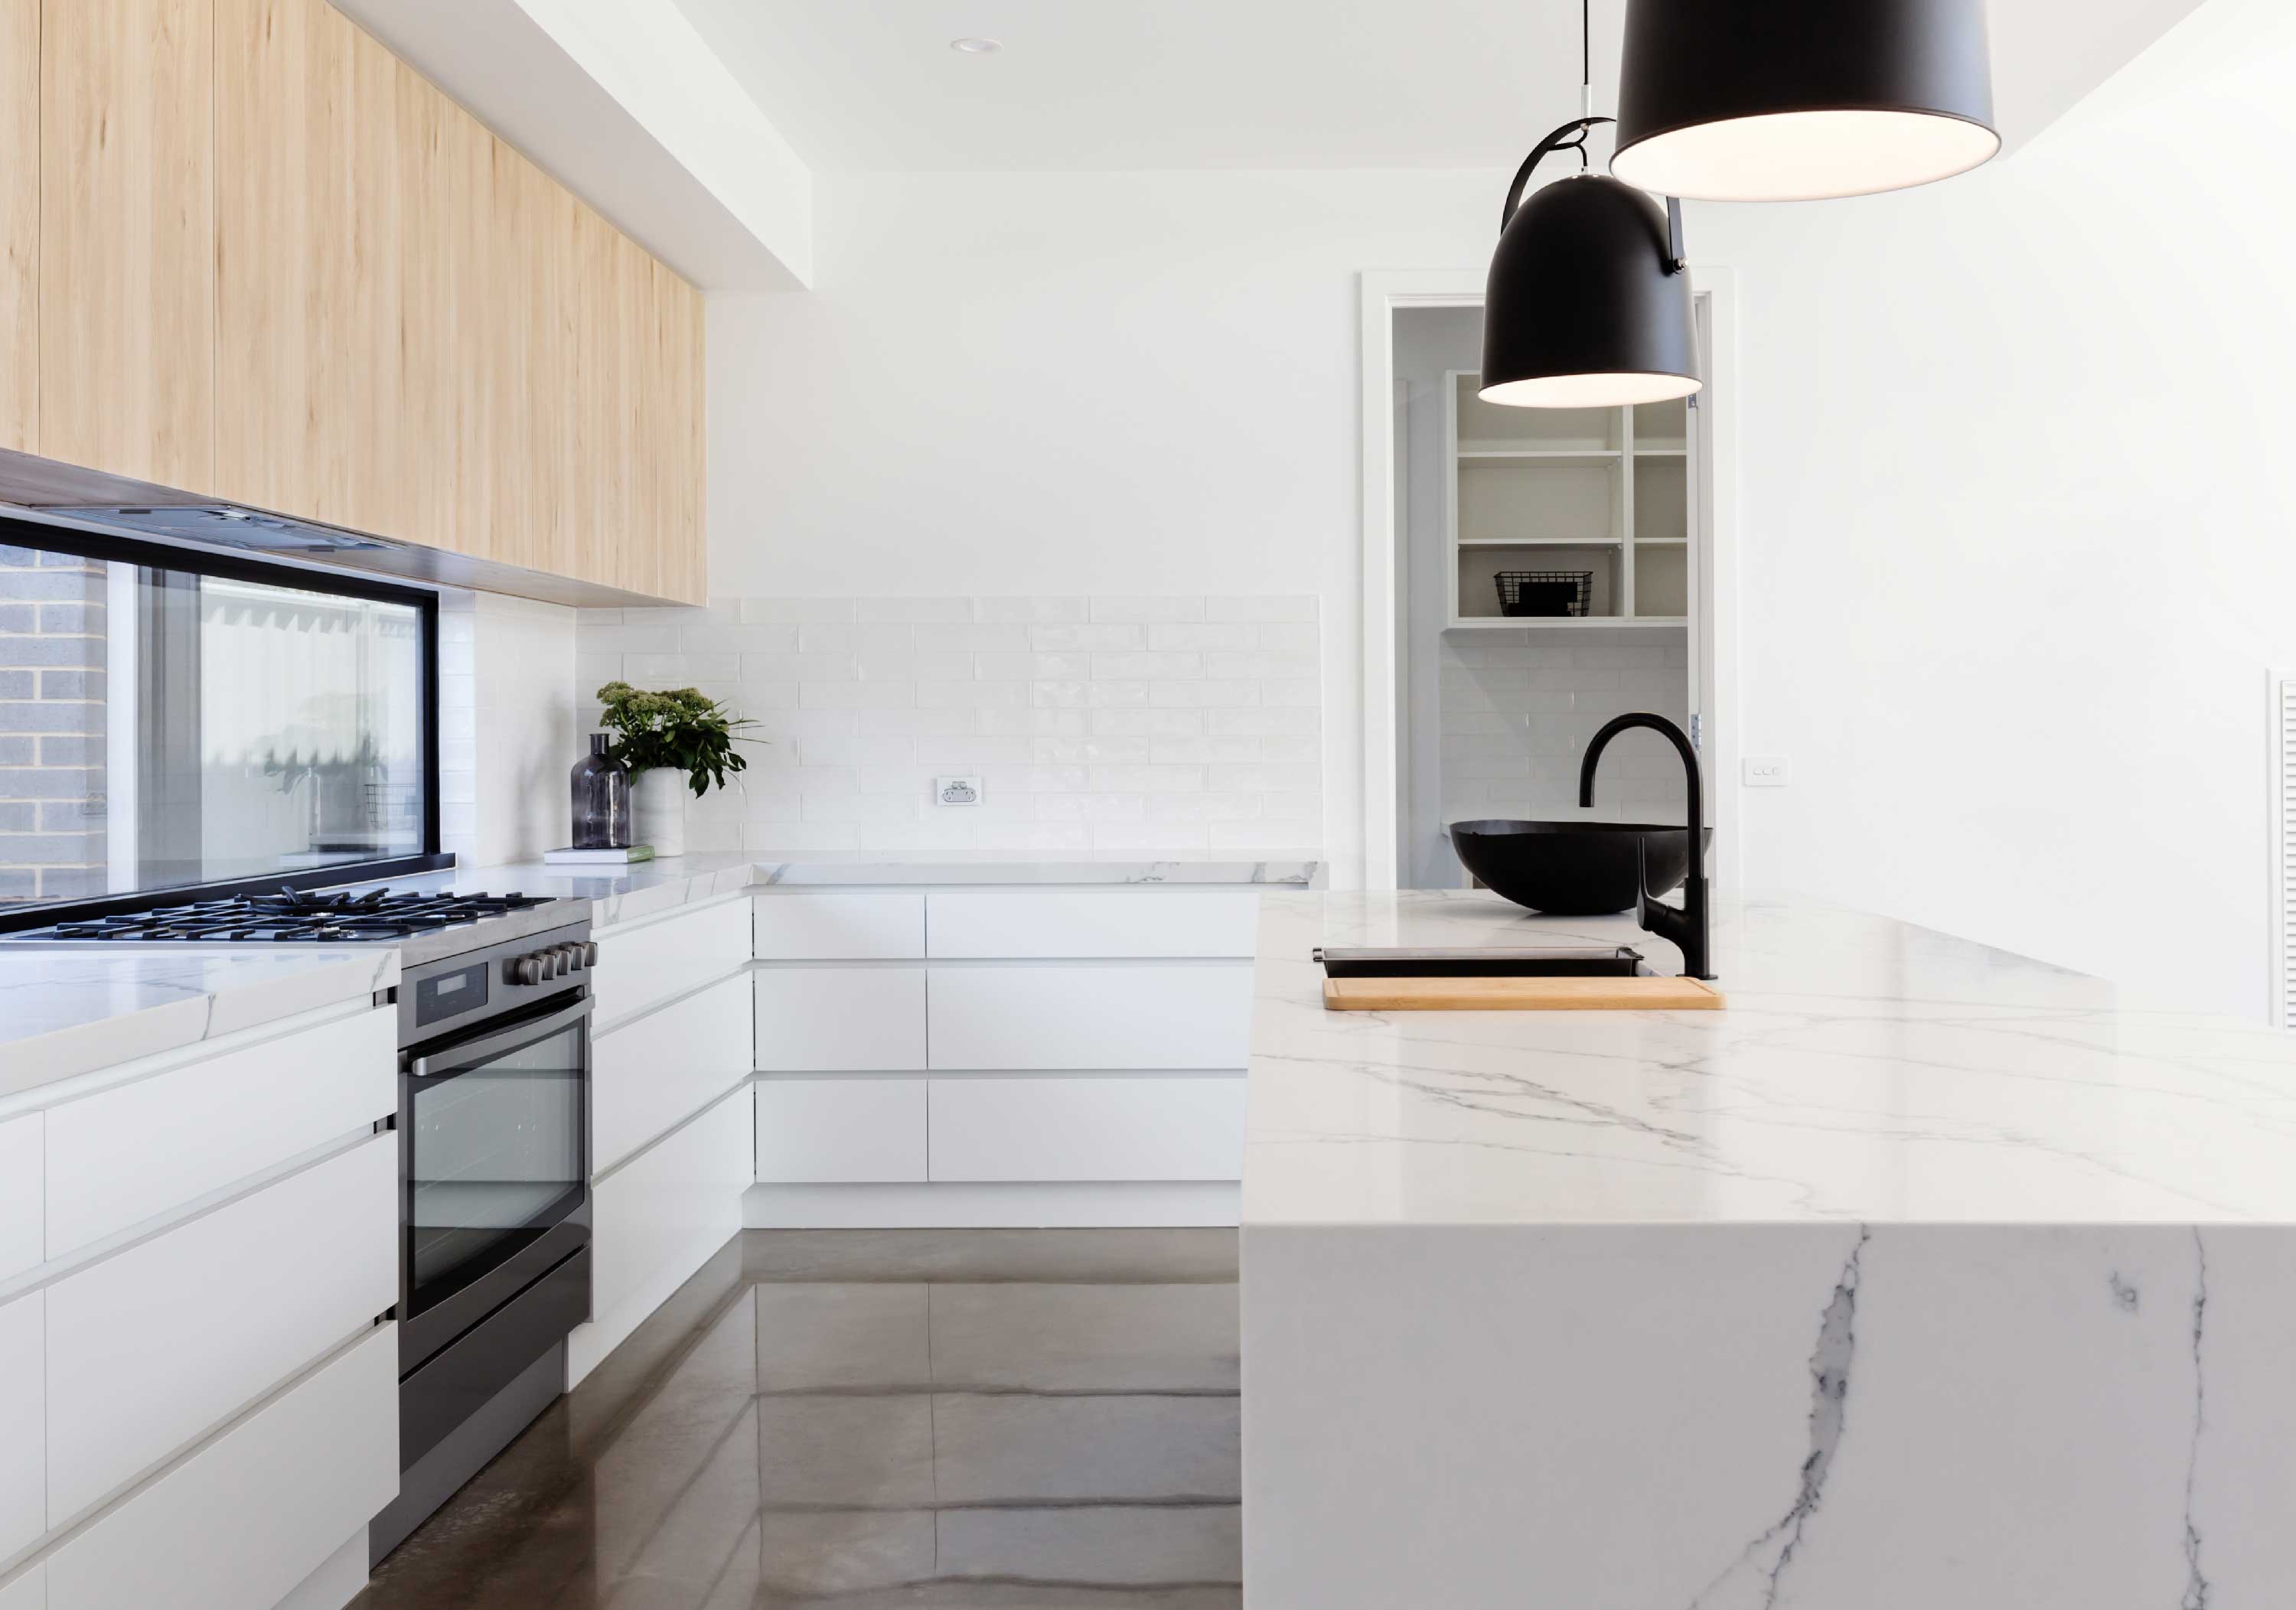 modular kitchen interior design tips